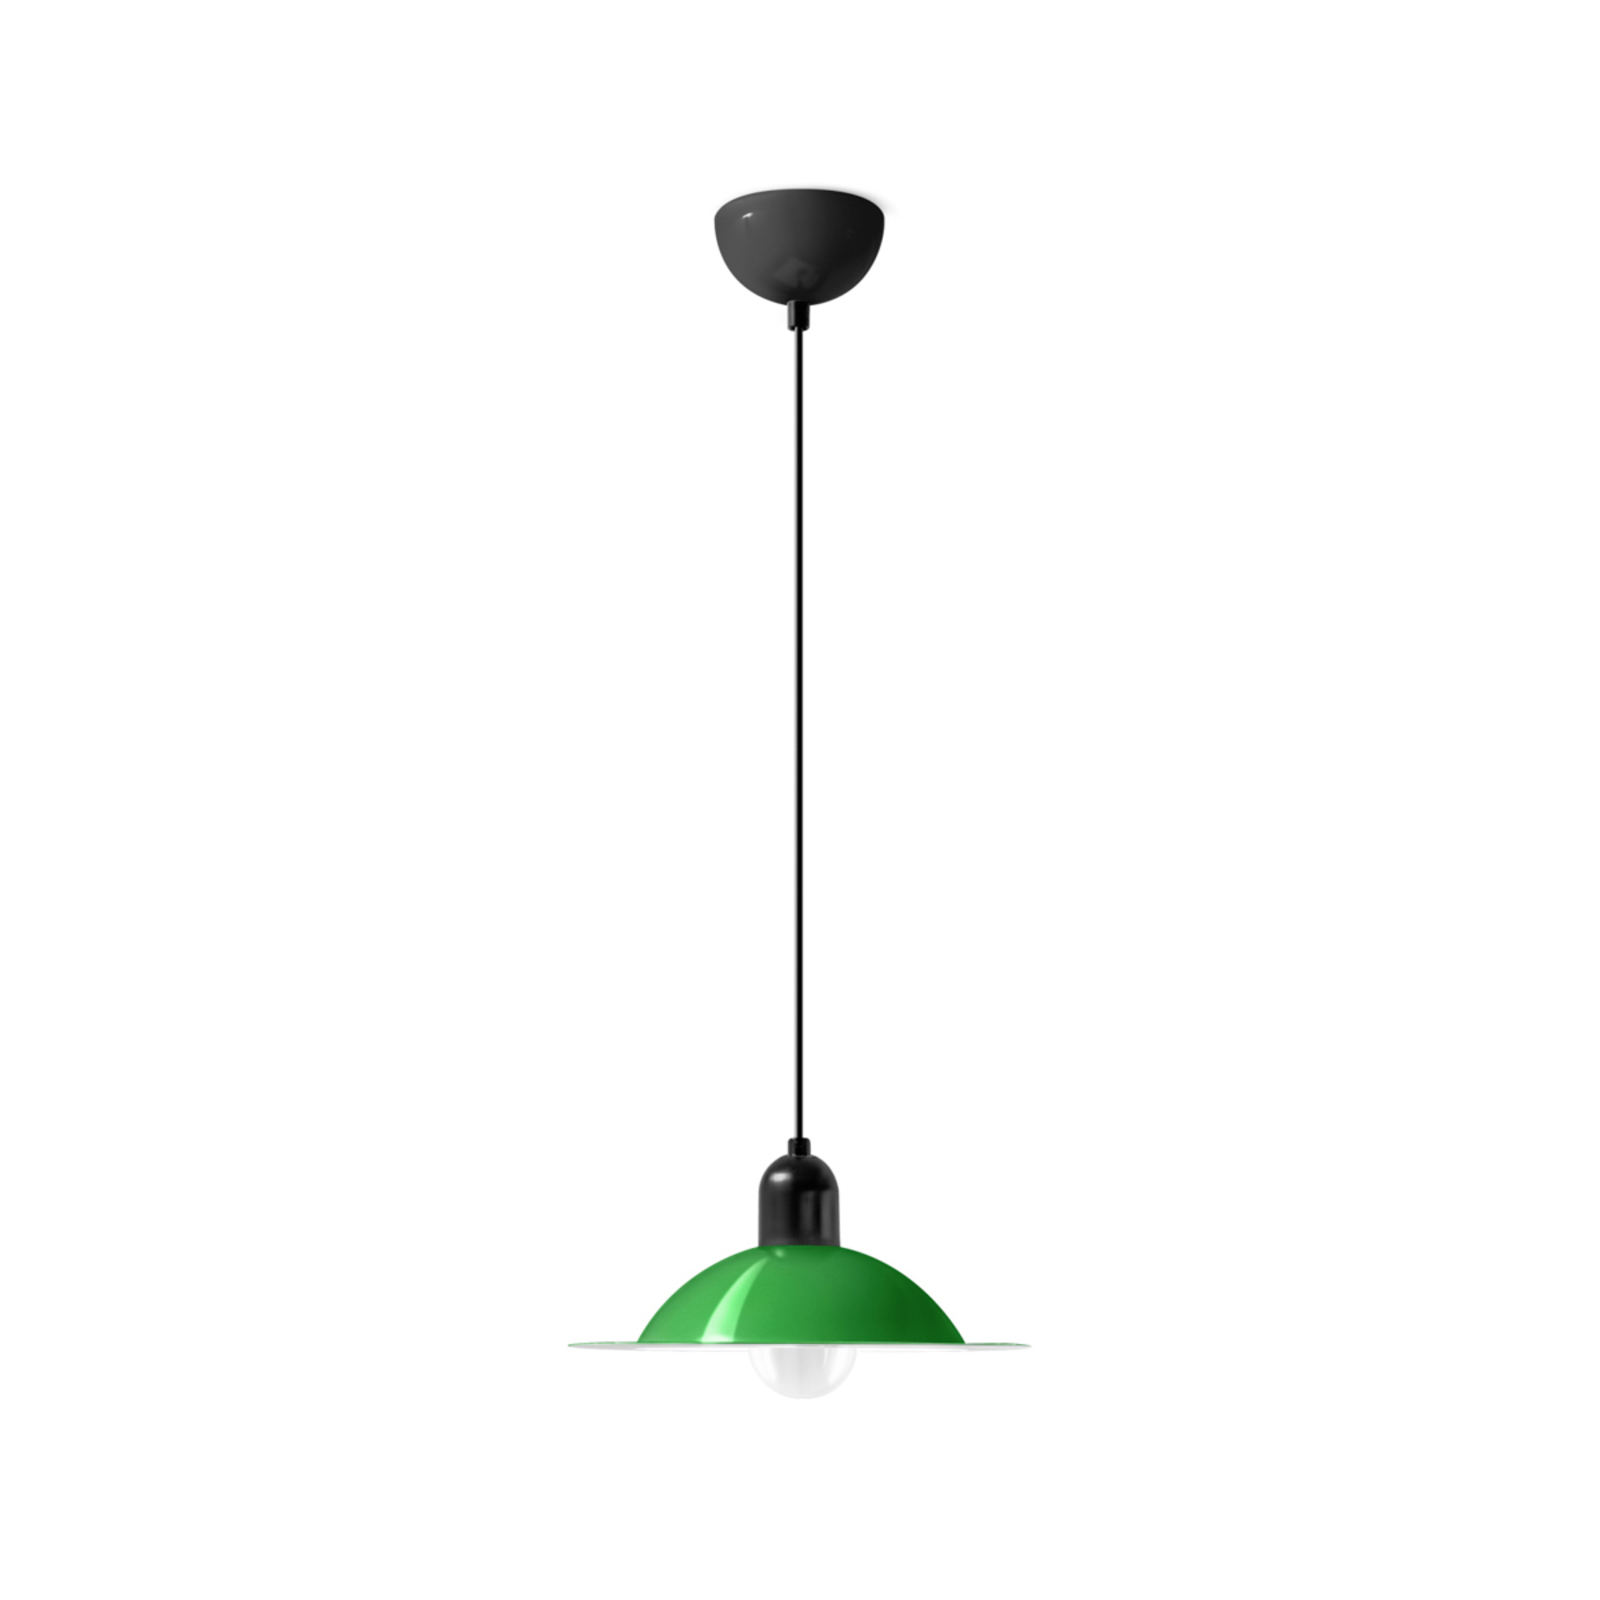 Stilnovo Lampiatta LED sospensione, Ø 28cm, verde